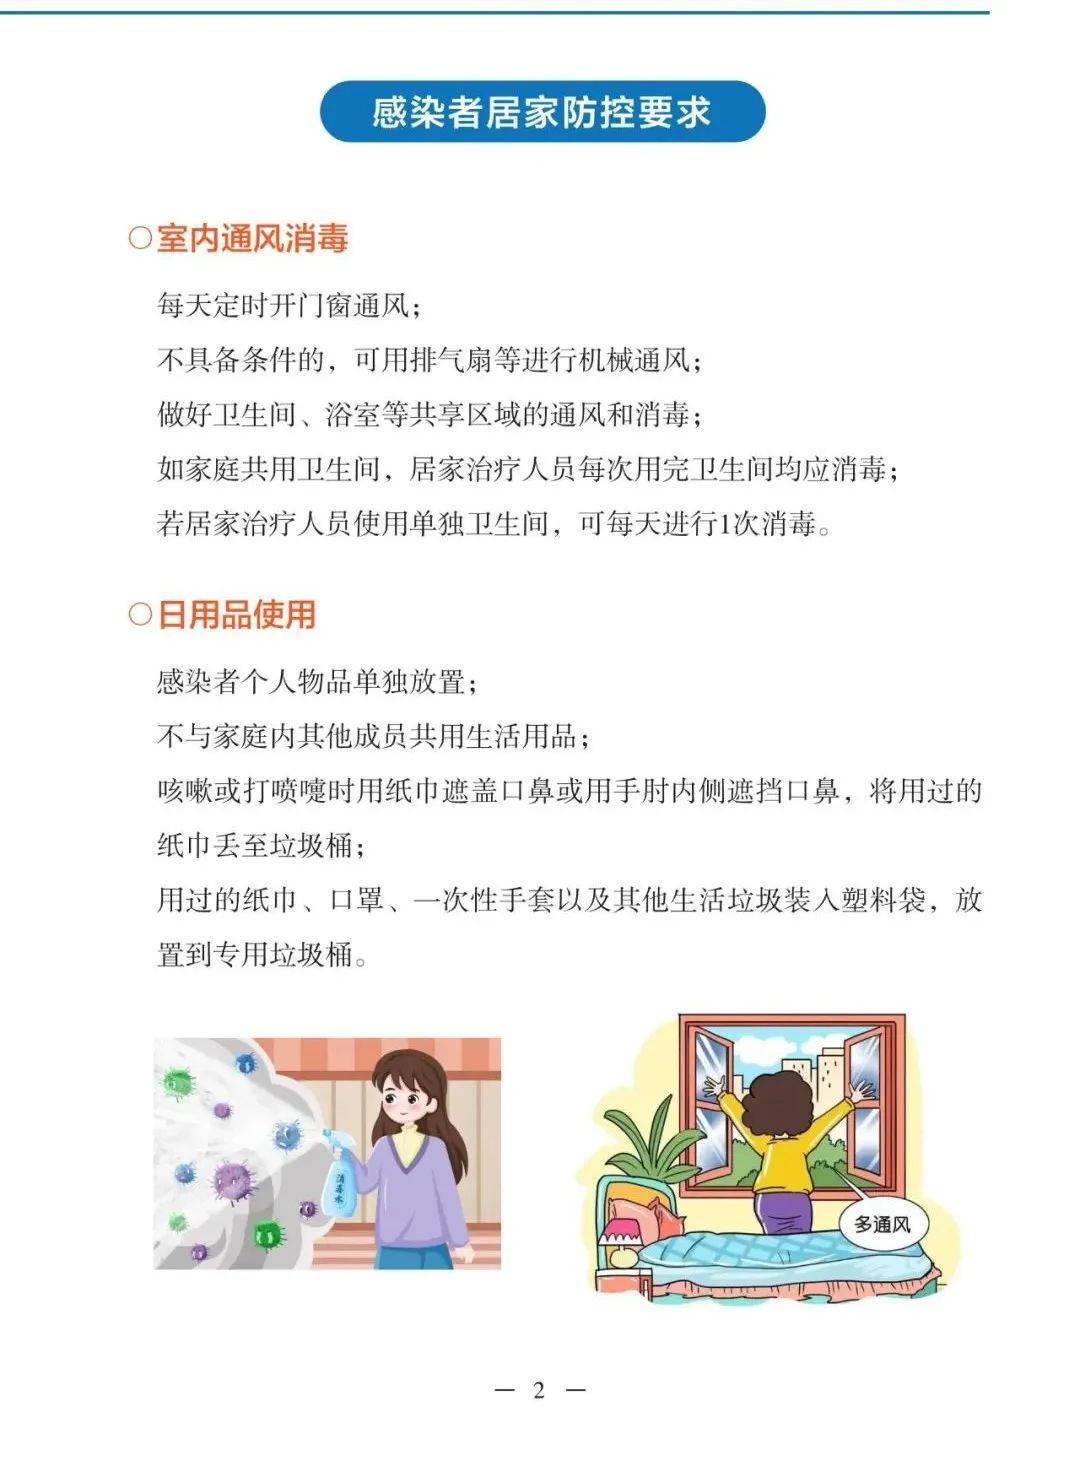 衡阳发布新冠病毒感染阳性康复手册